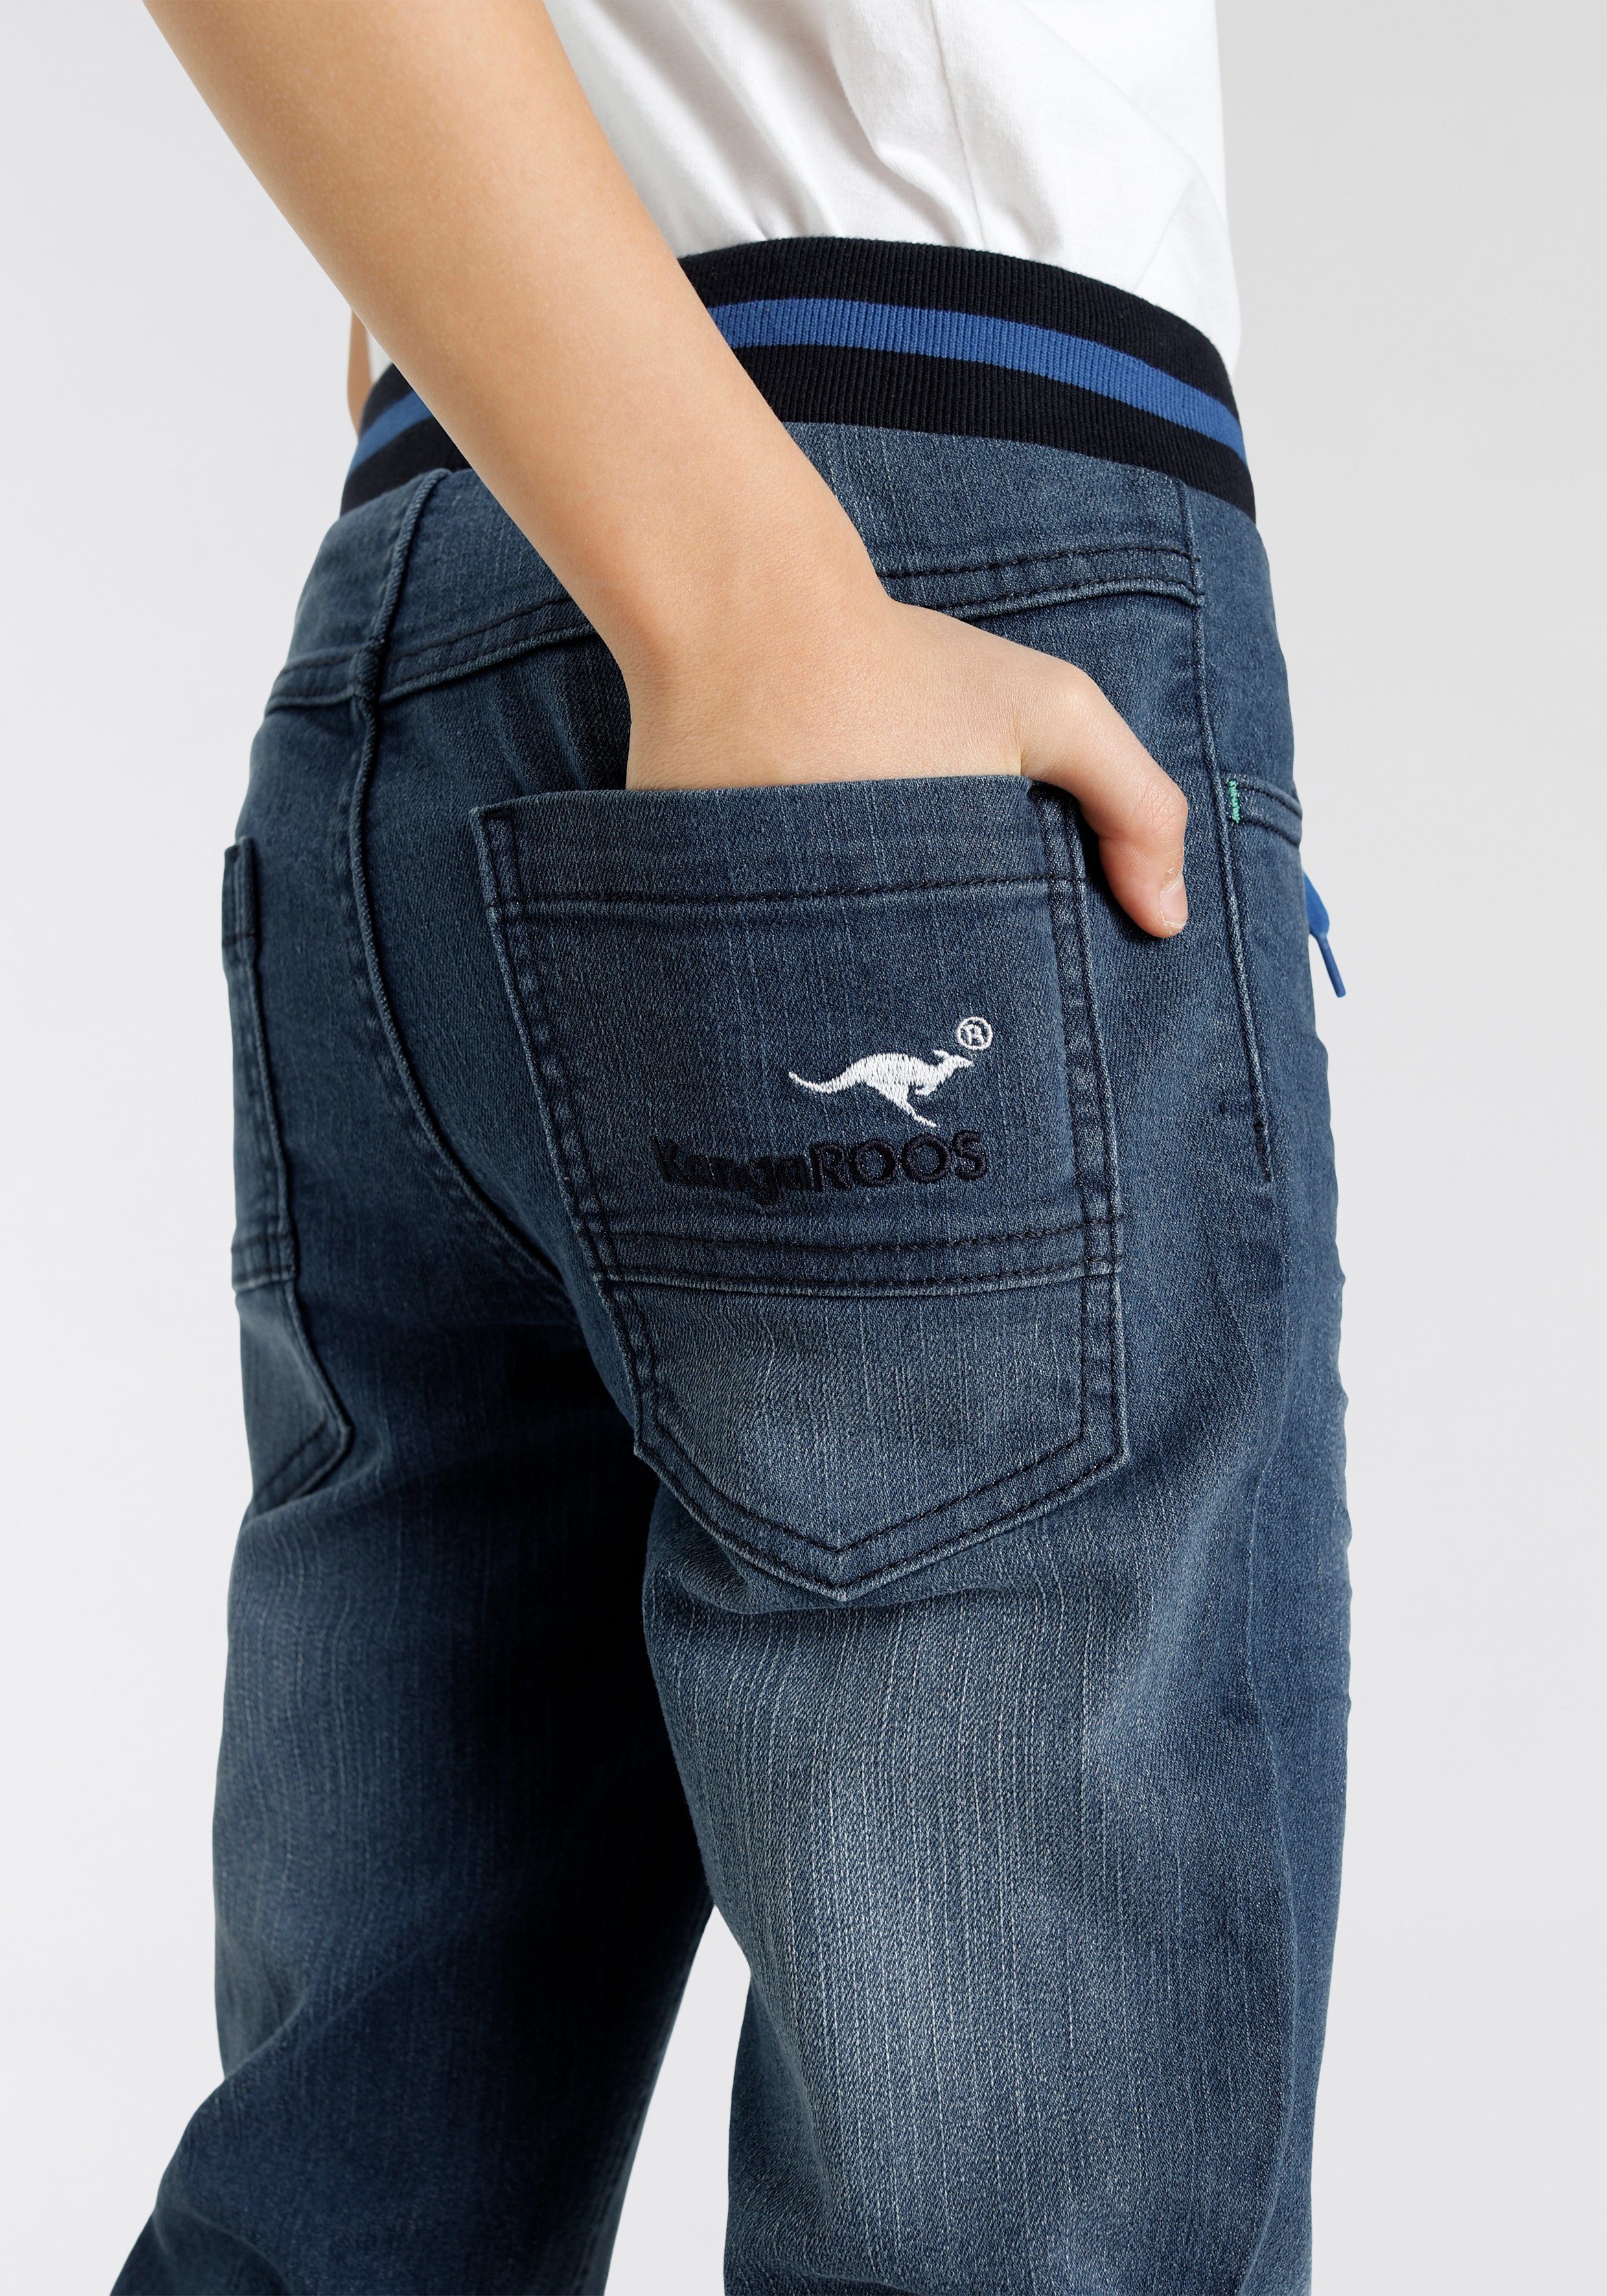 KangaROOS Stretch-Jeans in authentischer Waschung Denim